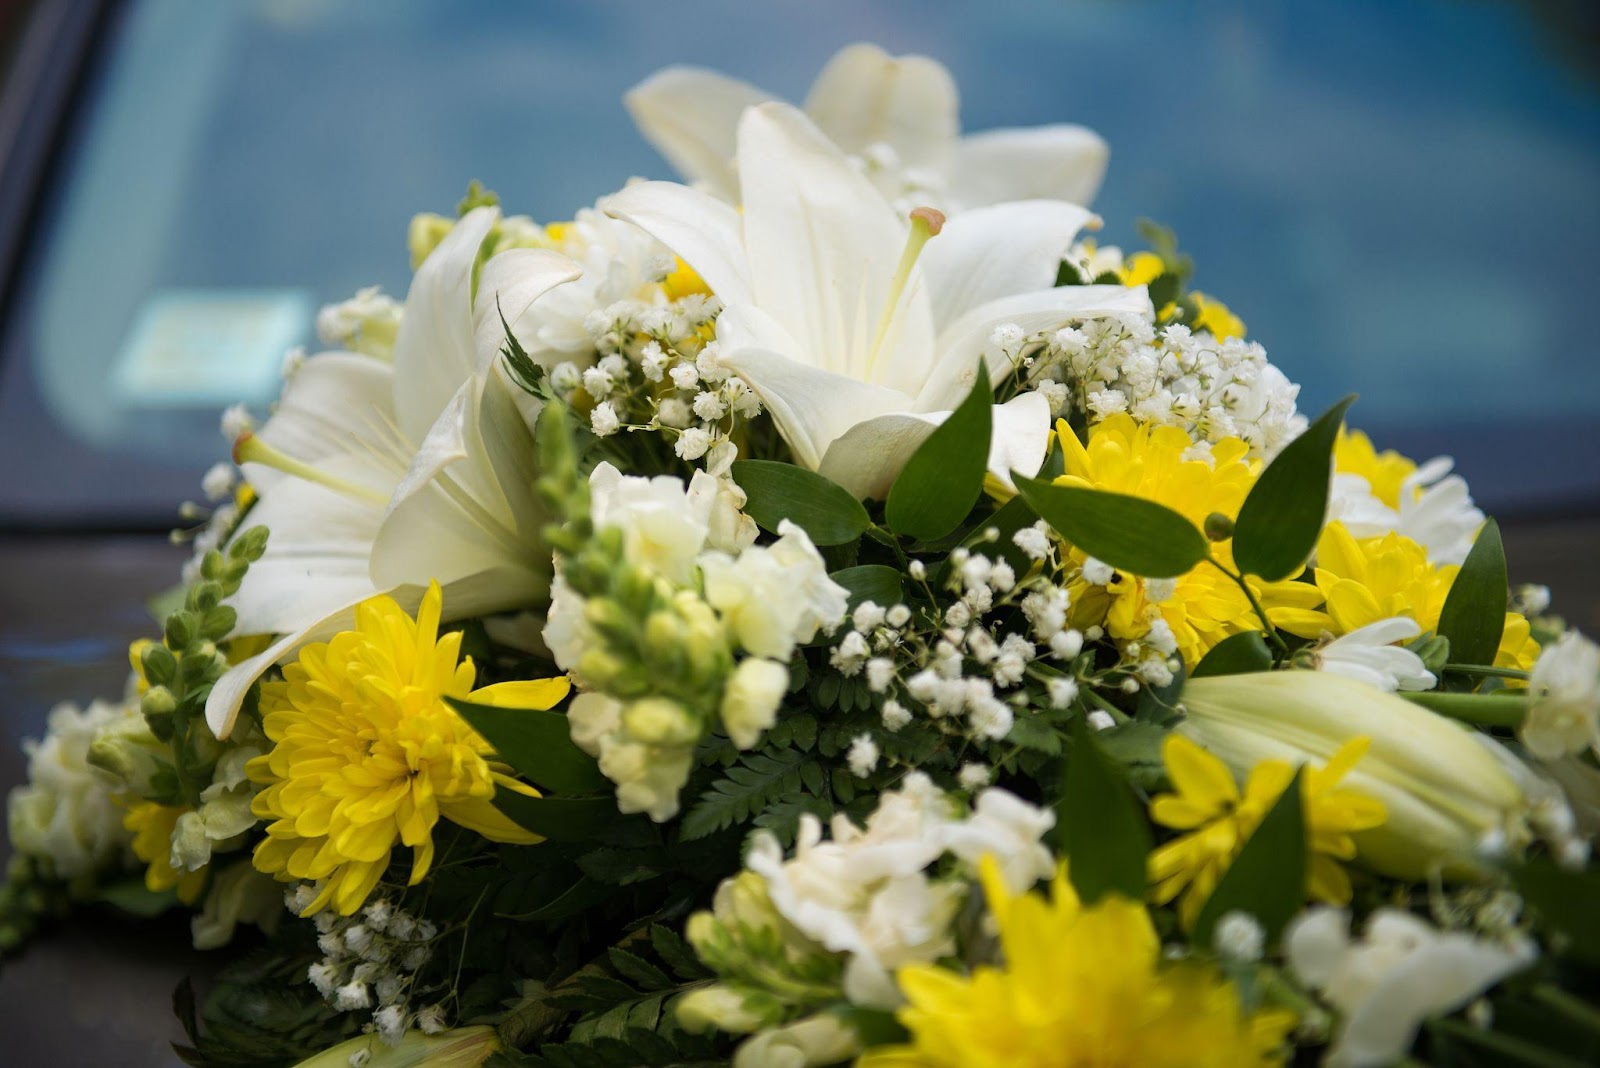 choosing-wedding-flower-arrangements-for-your-wedding-car-1